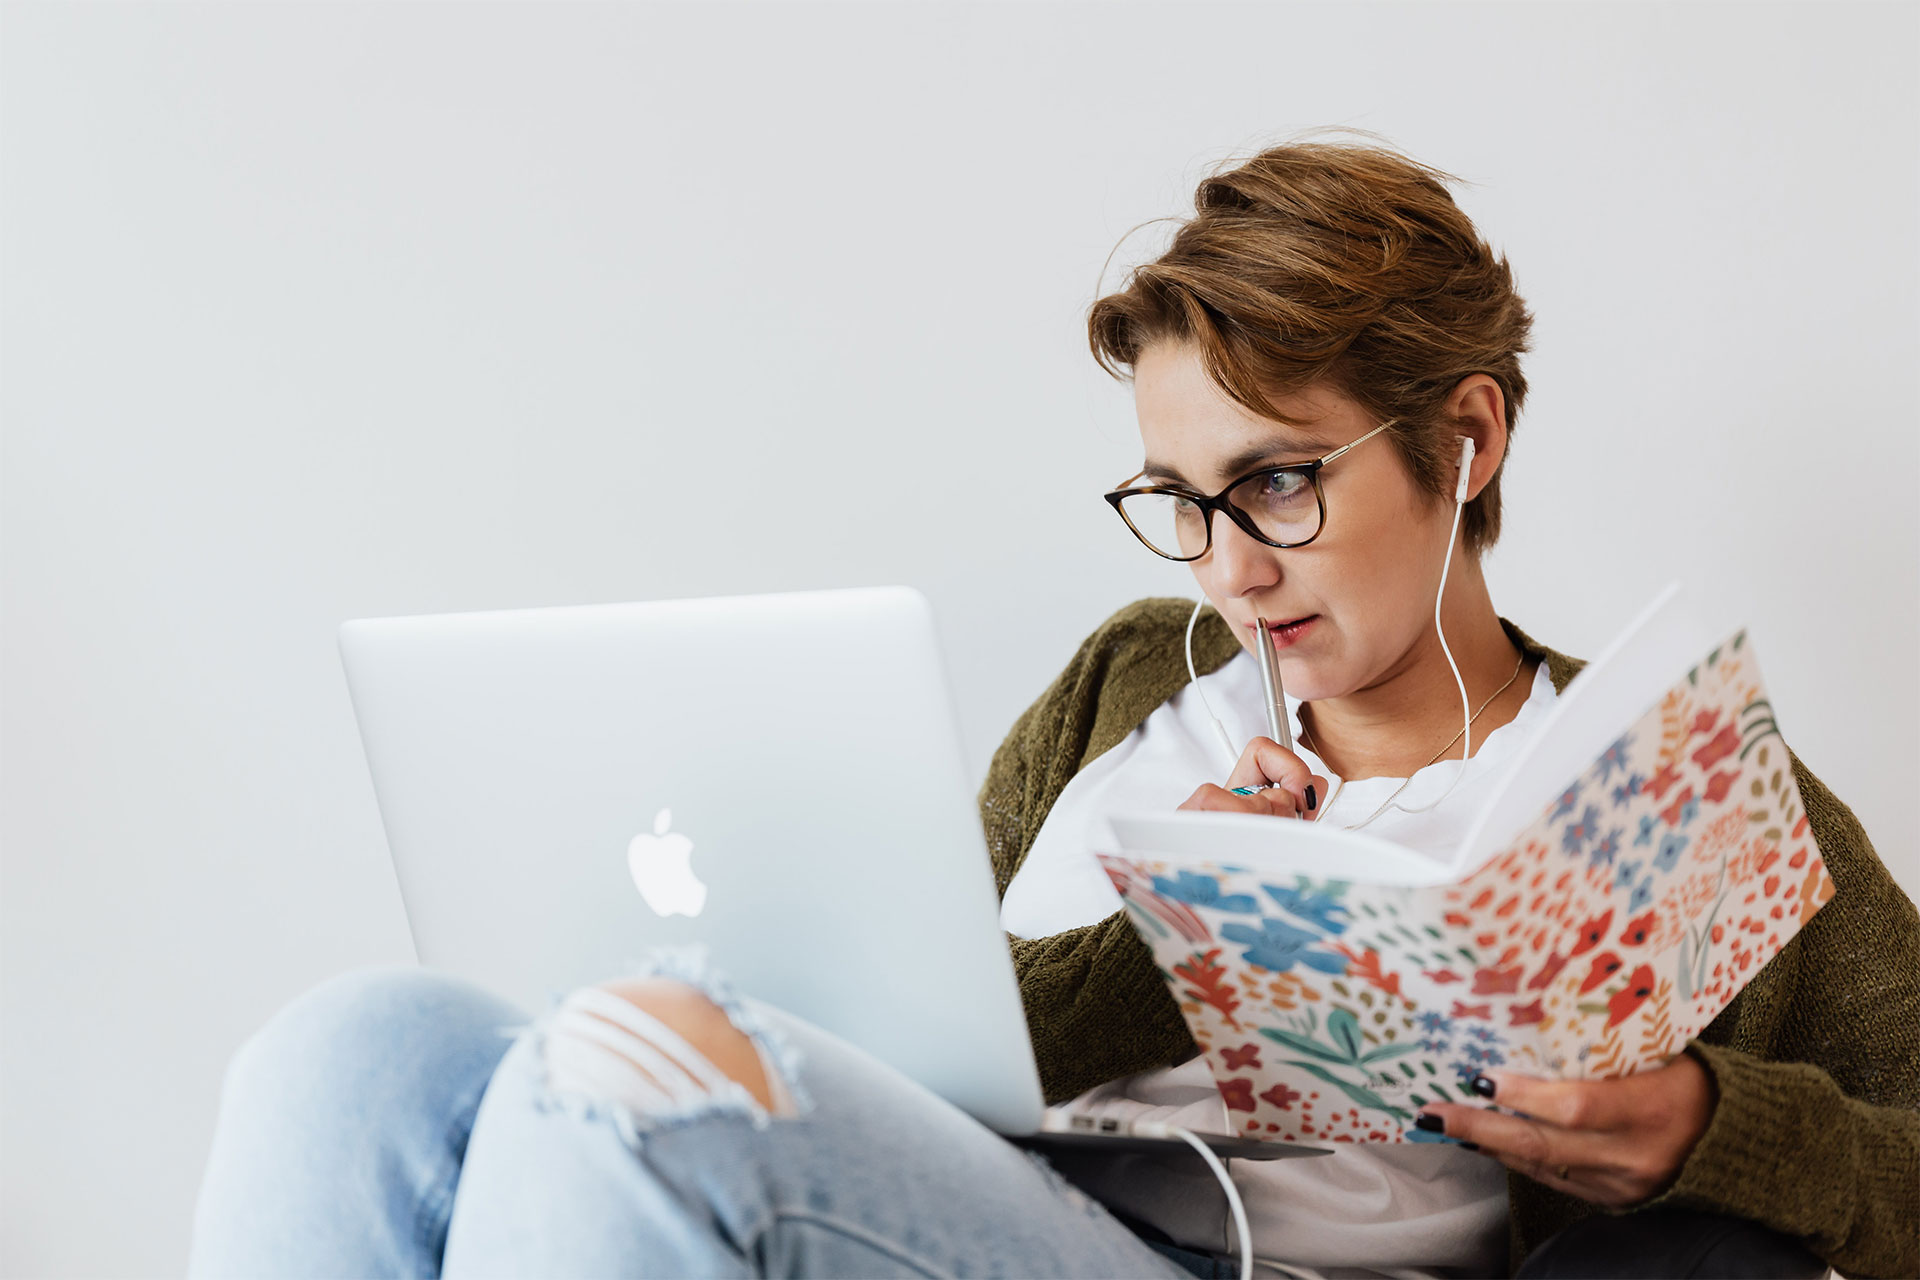 Una persona con auriculares trabajando en un MacBook y con un cuaderno y un bolígrafo en la mano.